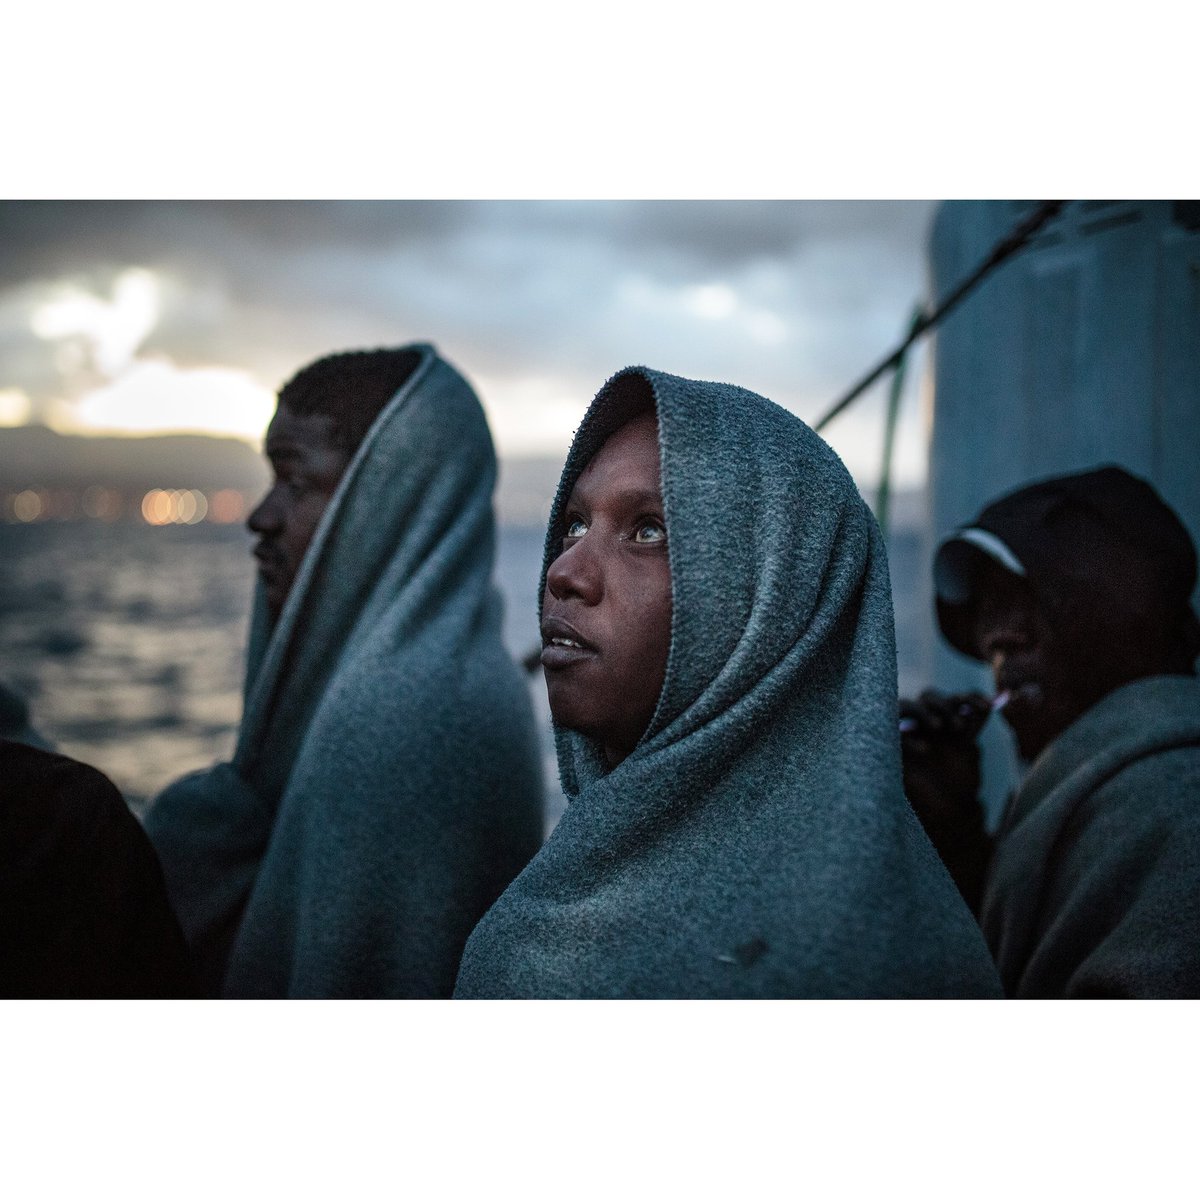 Dek, 23 anni, somalo, si commuove al vedere issare la bandiera italiana su #SeaWatch3, mentre la nave fa il suo ingresso nel porto di Messina. 27 febbraio 2020.

@SeaWatchItaly